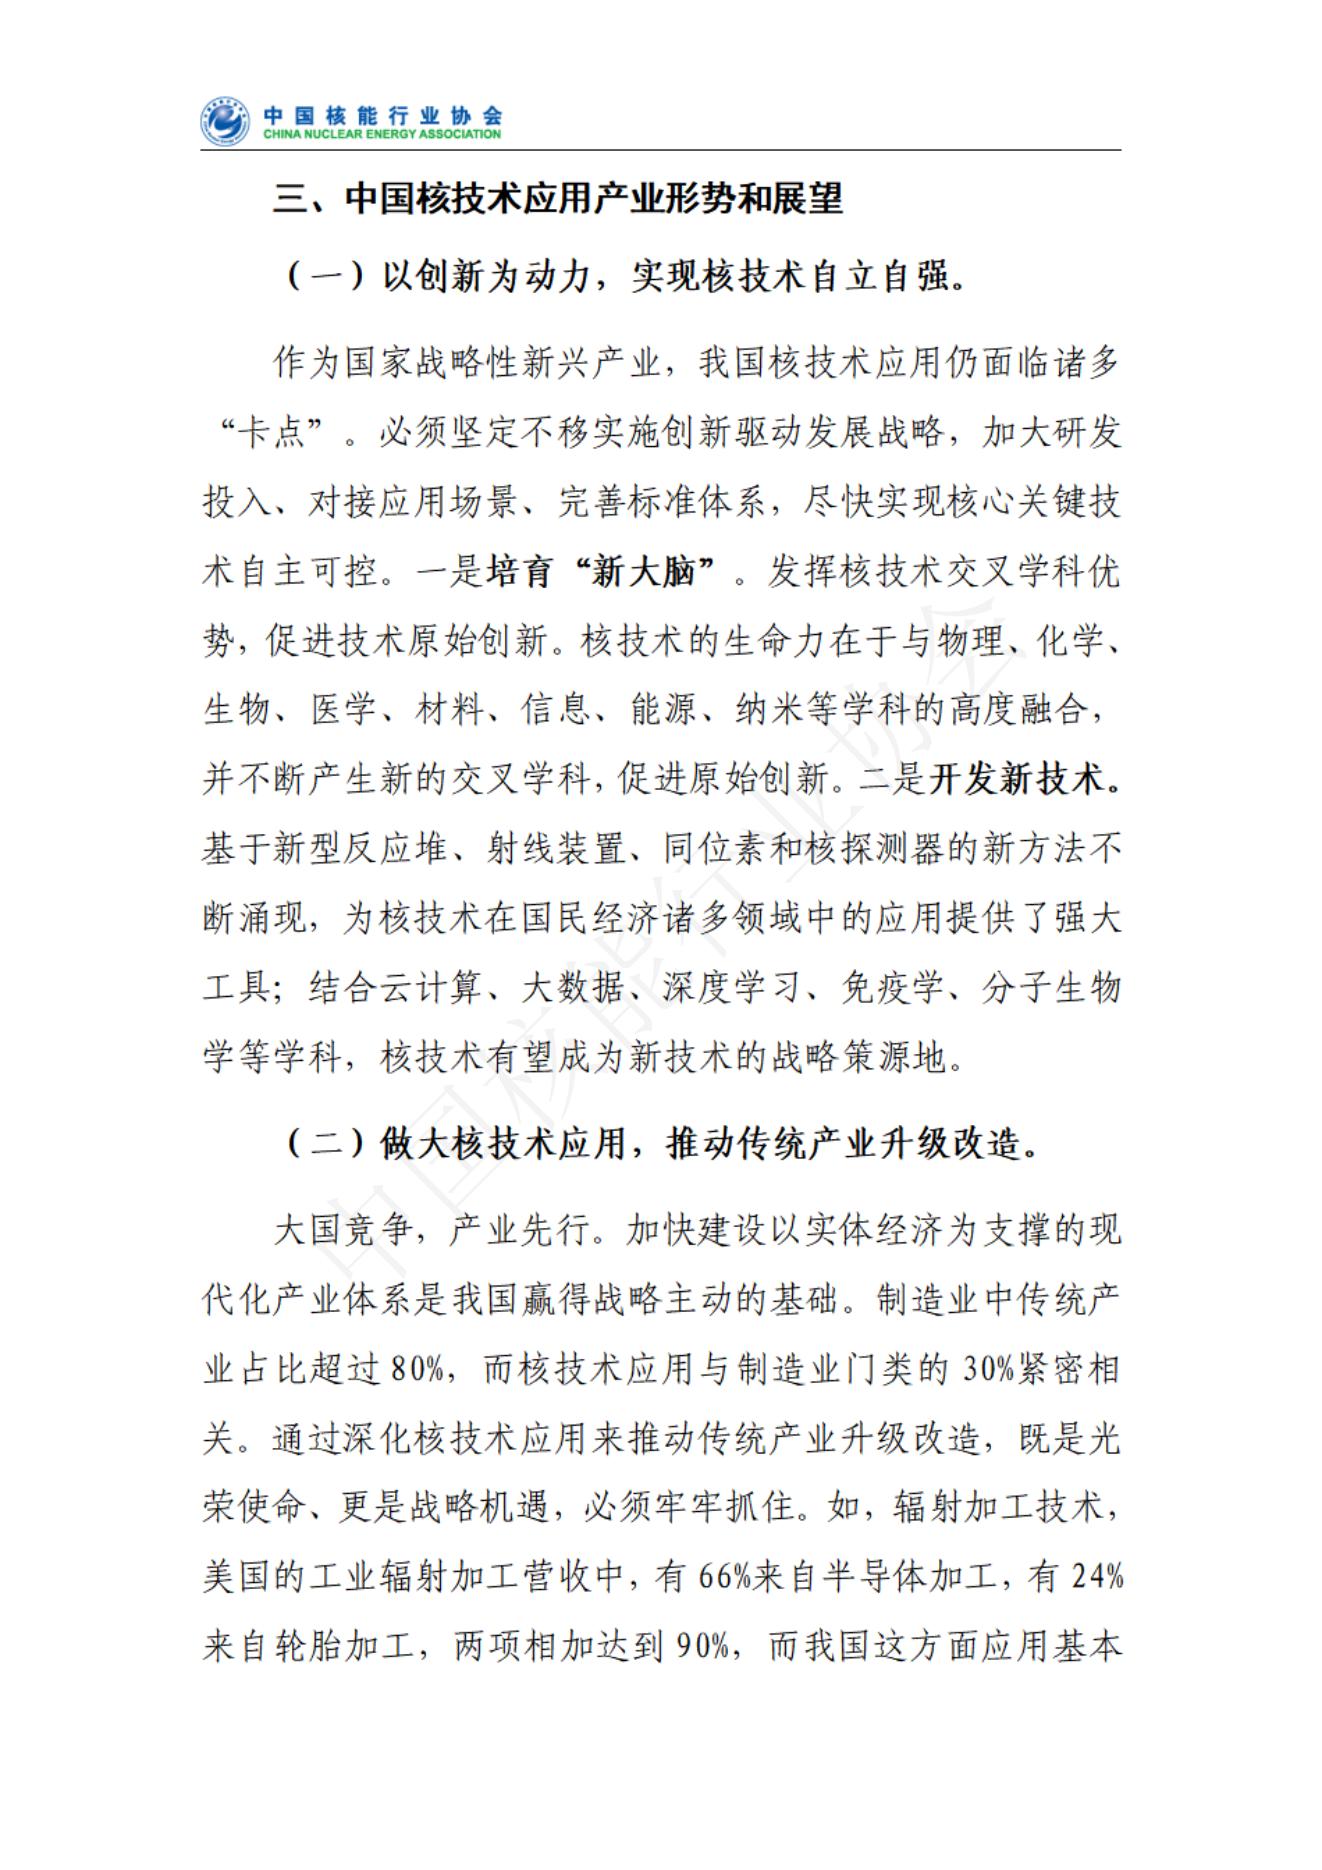 中国核技术应用产业发展报告核心报告（发布稿）(1)_05.jpg